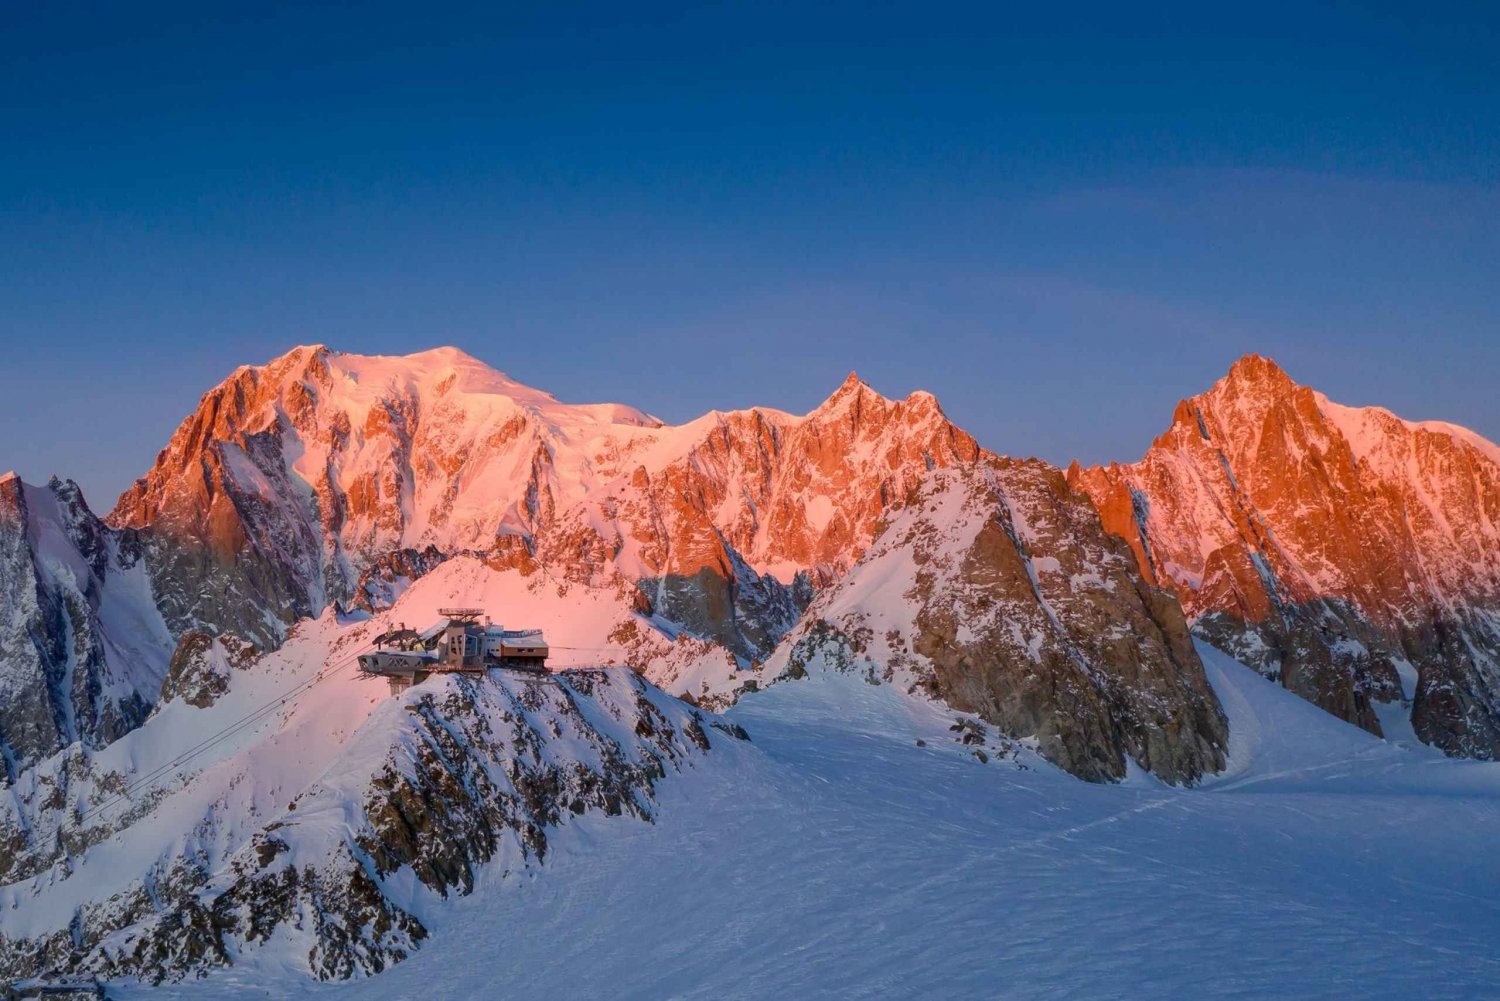 Z Turynu: prywatna całodniowa wycieczka na Mont Blanc